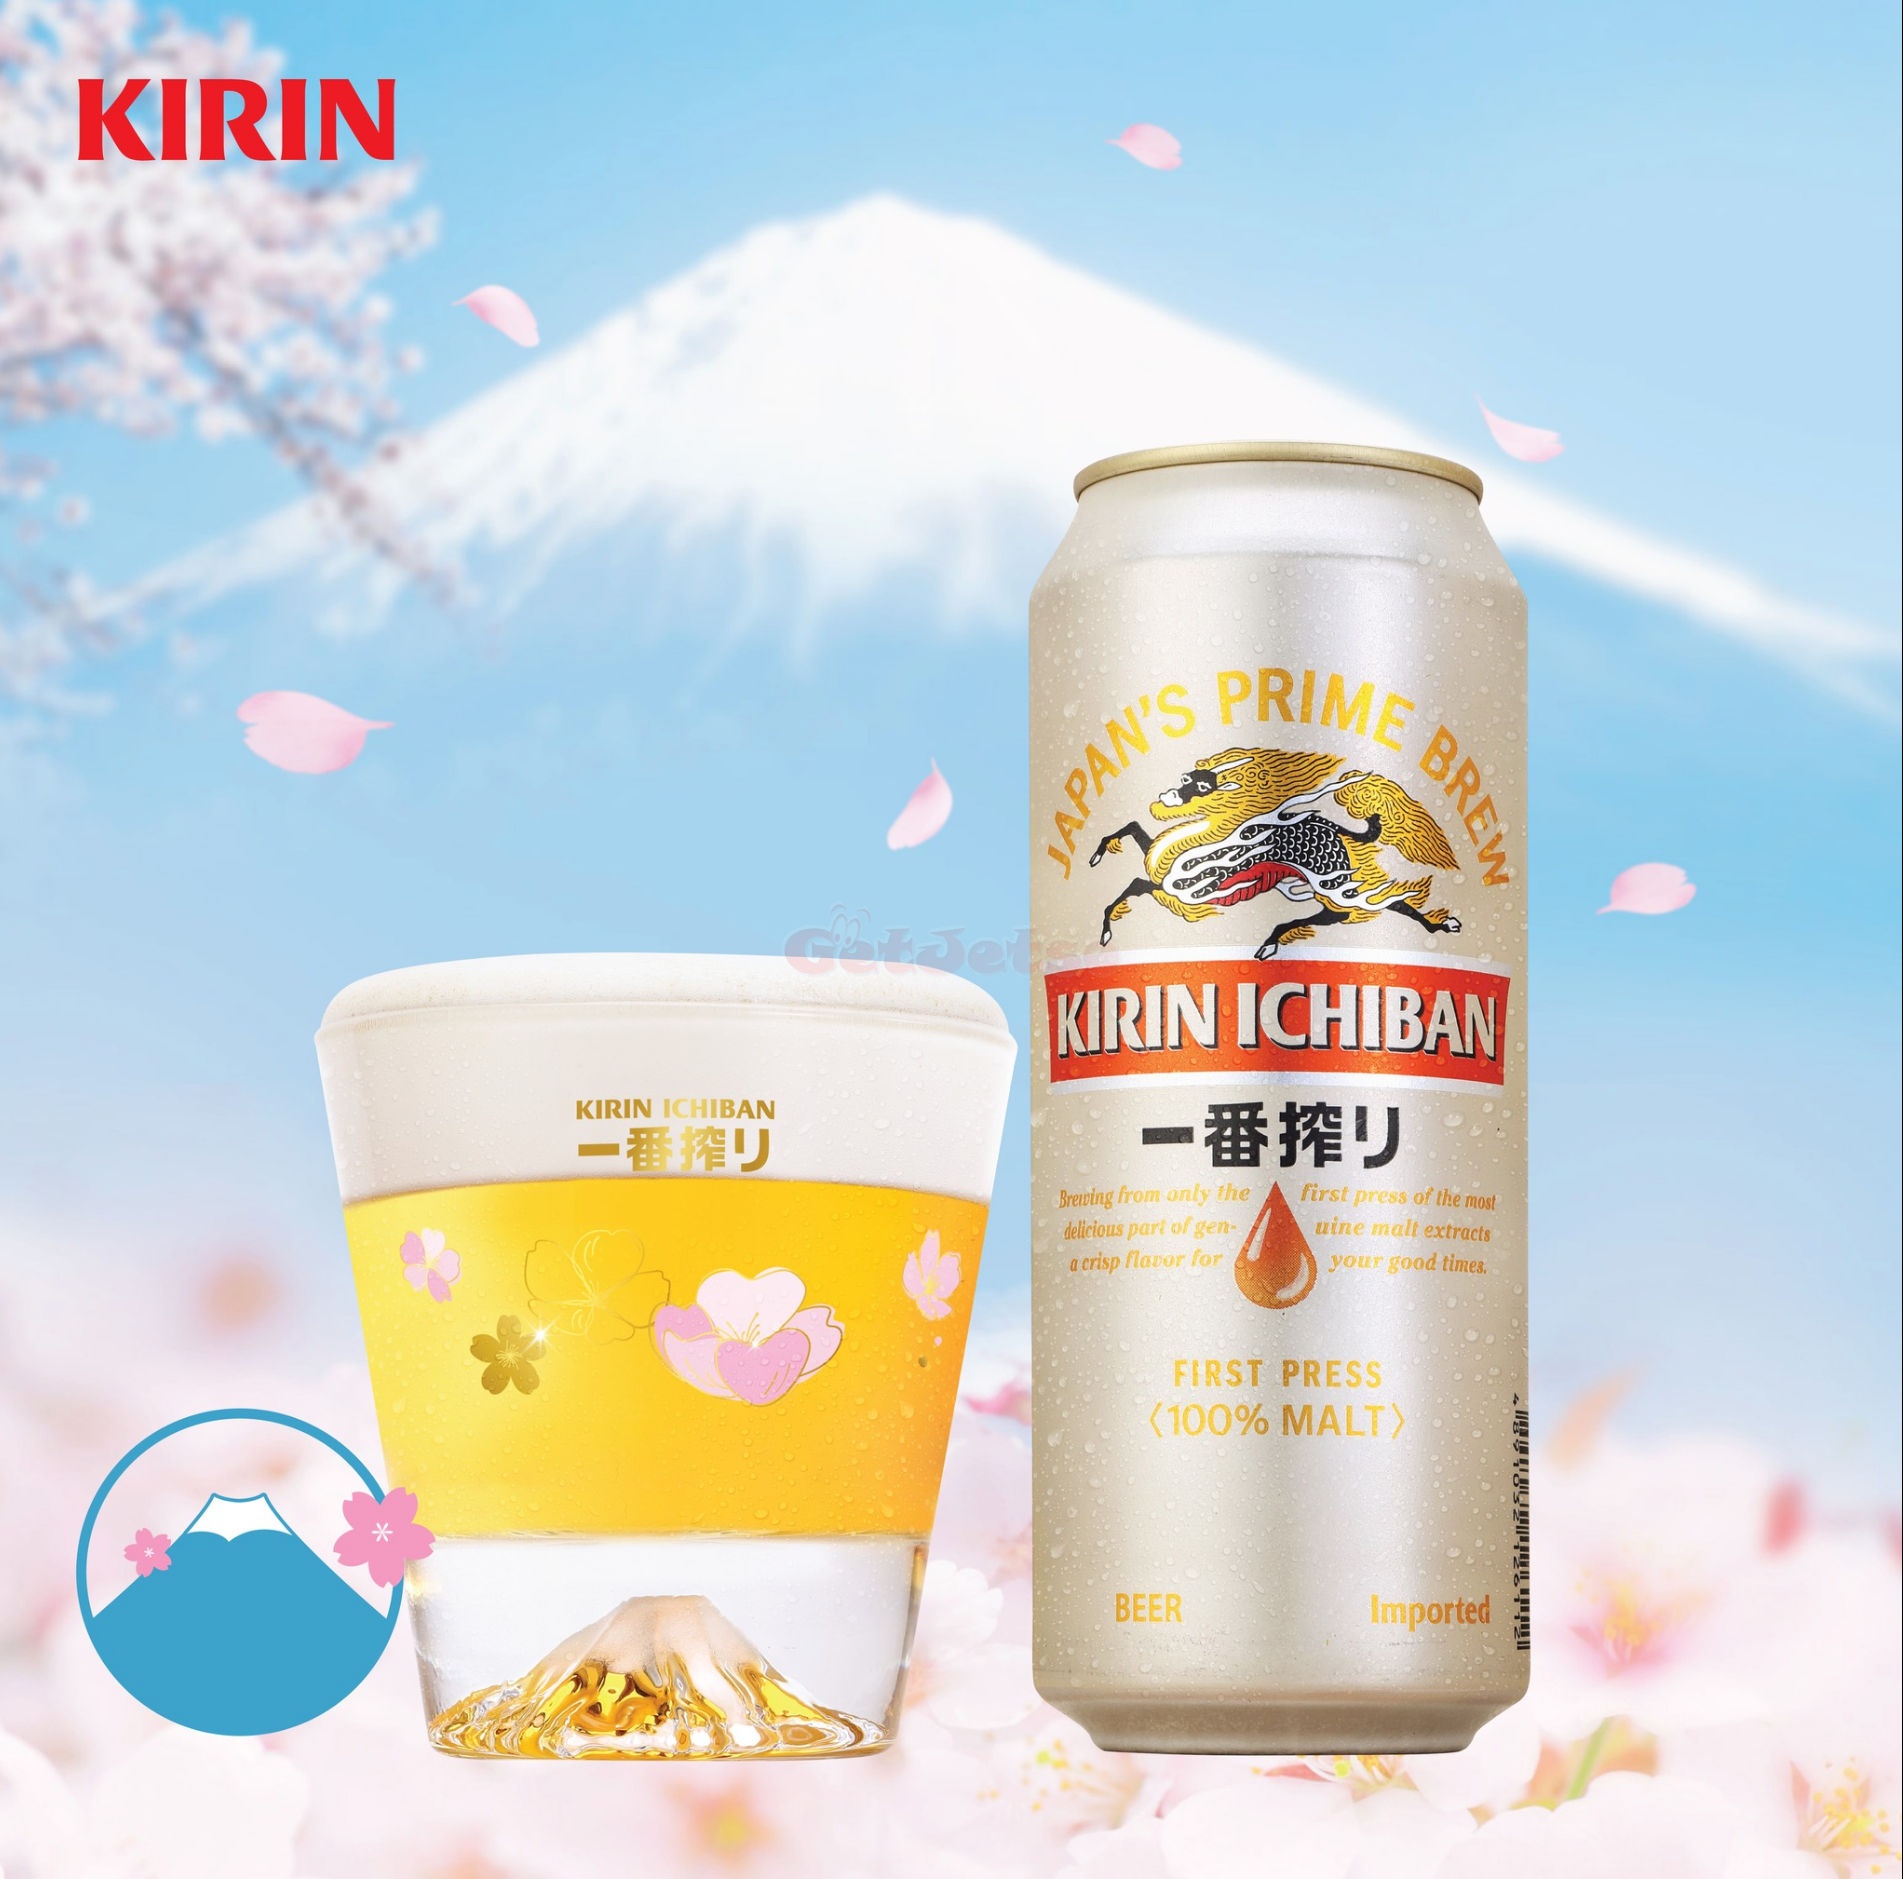 麒麟啤酒買滿加換「麒麟櫻花富士山玻璃杯」優惠@7-11(至24年4月9日)圖片1